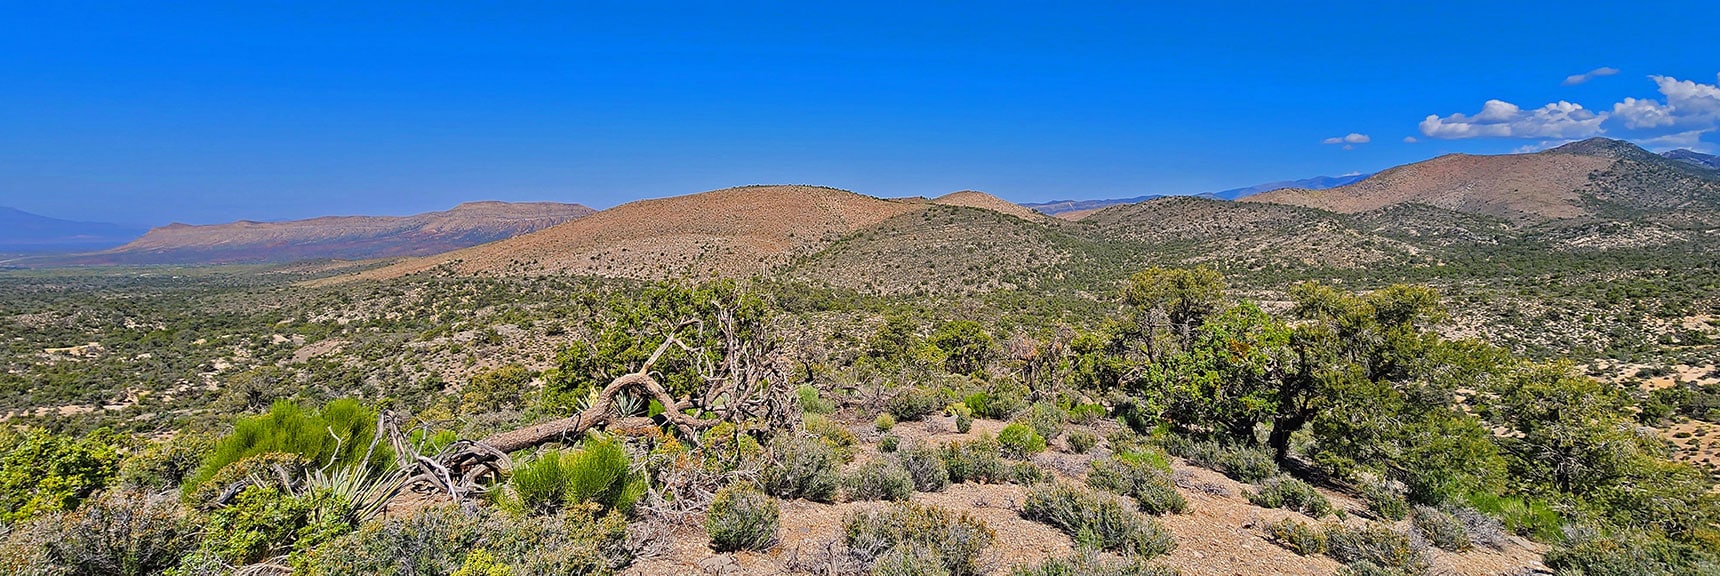 View Down to Landmark Bluff Start/End Point from North Side of Wolverine Ridge | Little Zion | Rainbow Mountain Wilderness, Nevada